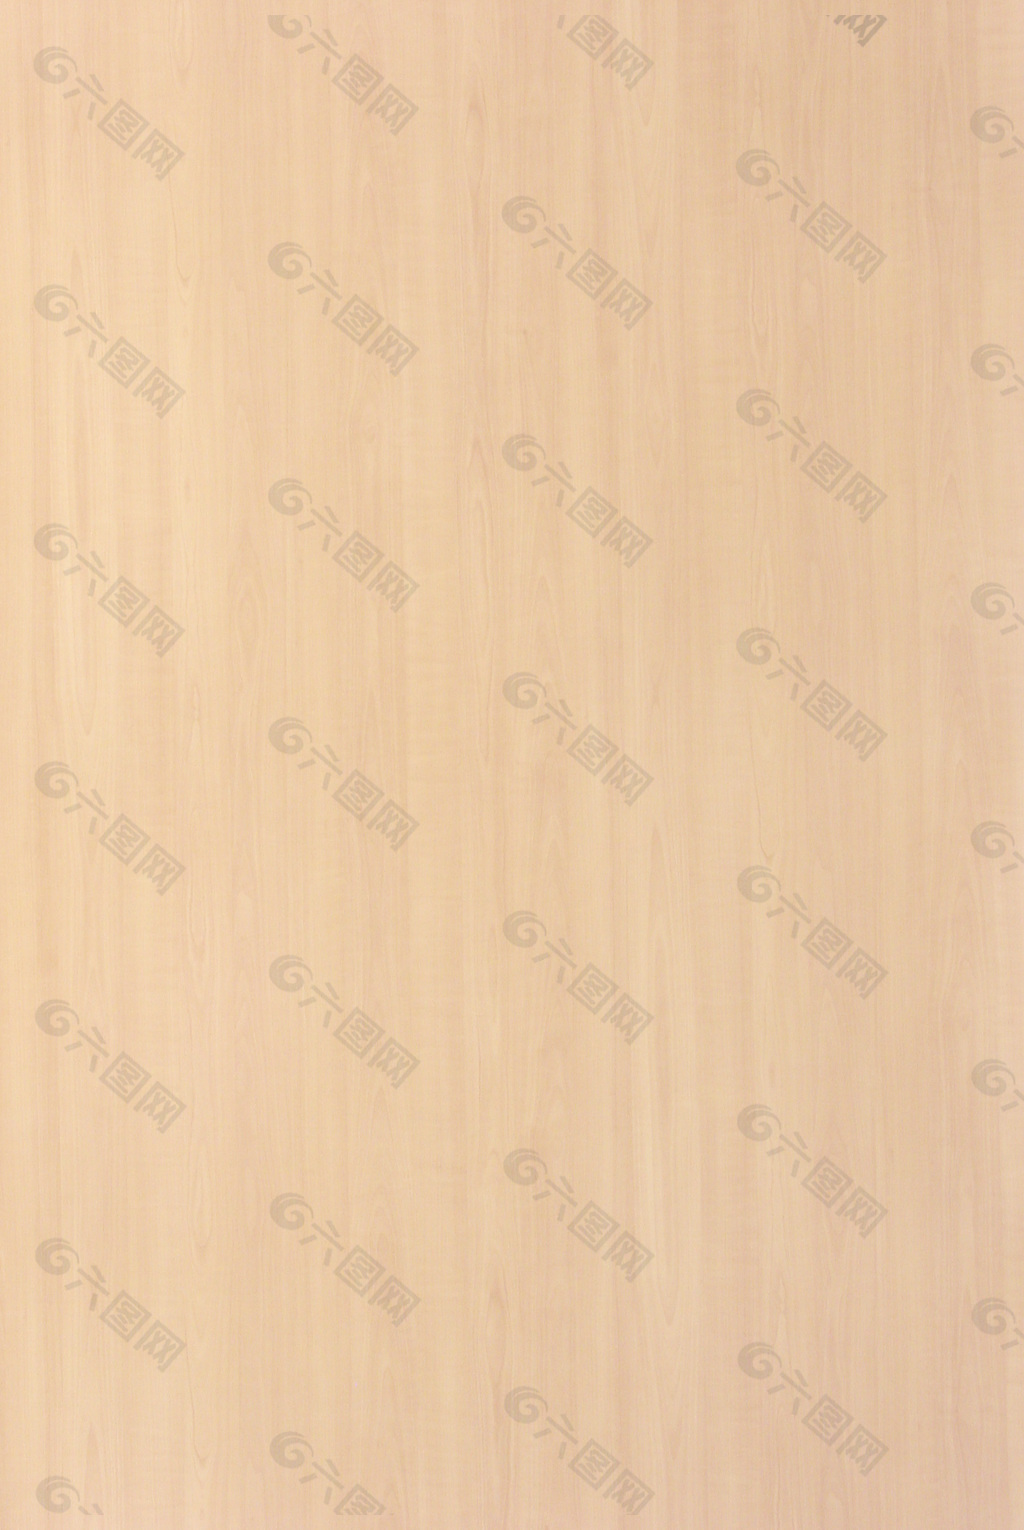 木材木纹木纹素材效果图木材木纹 534